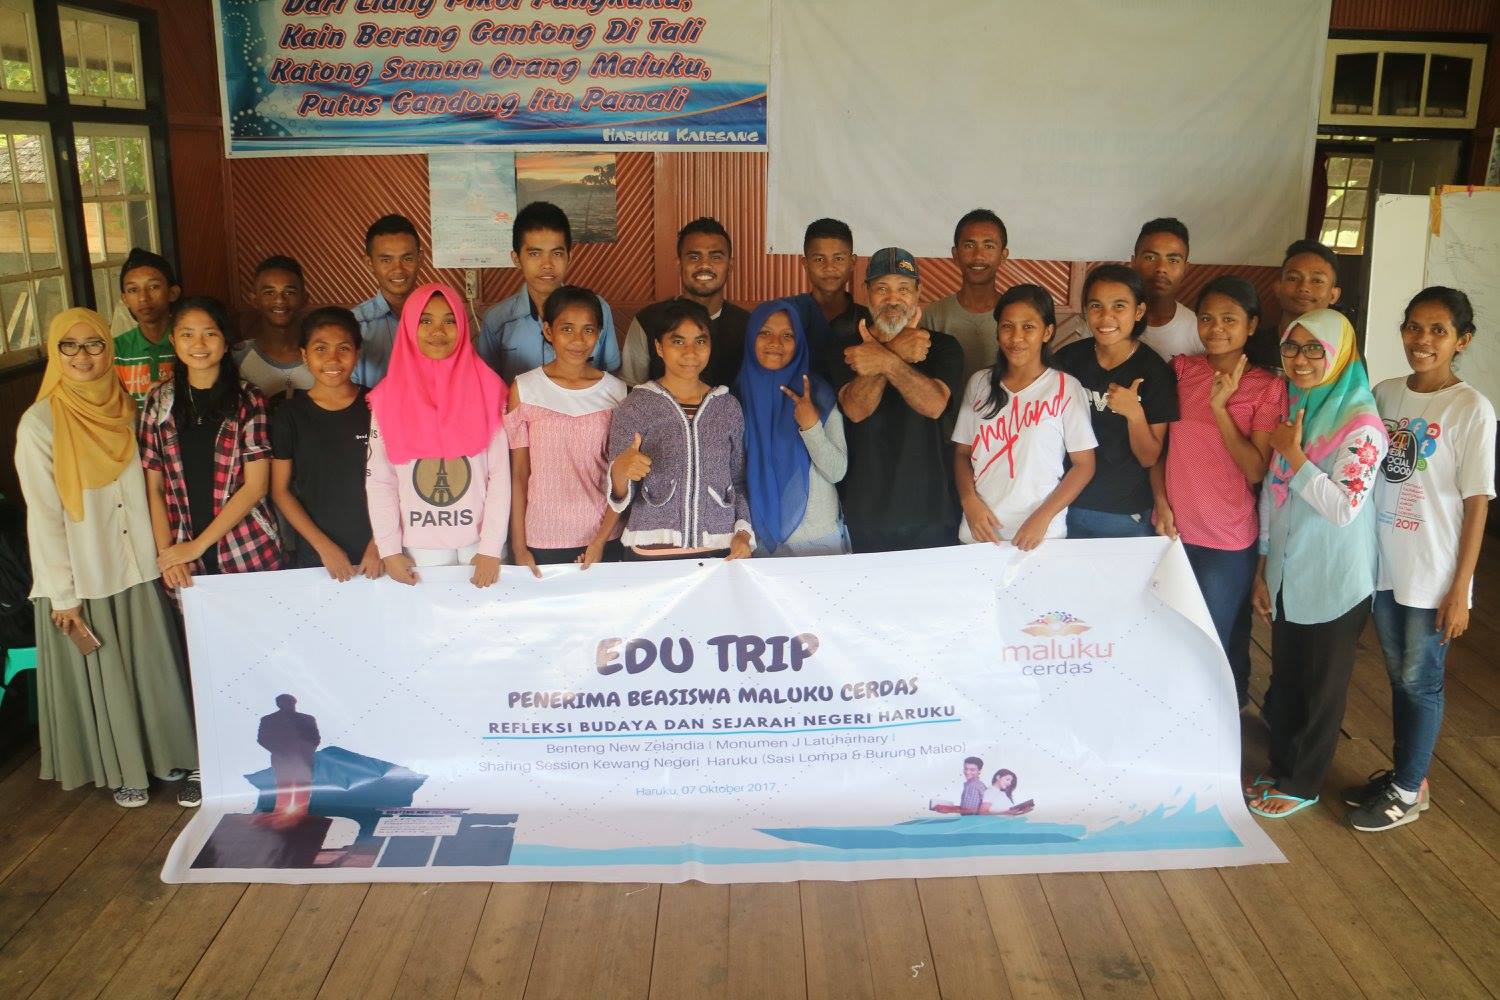 Edu Trip Penerima Beasiswa Maluku Cerdas